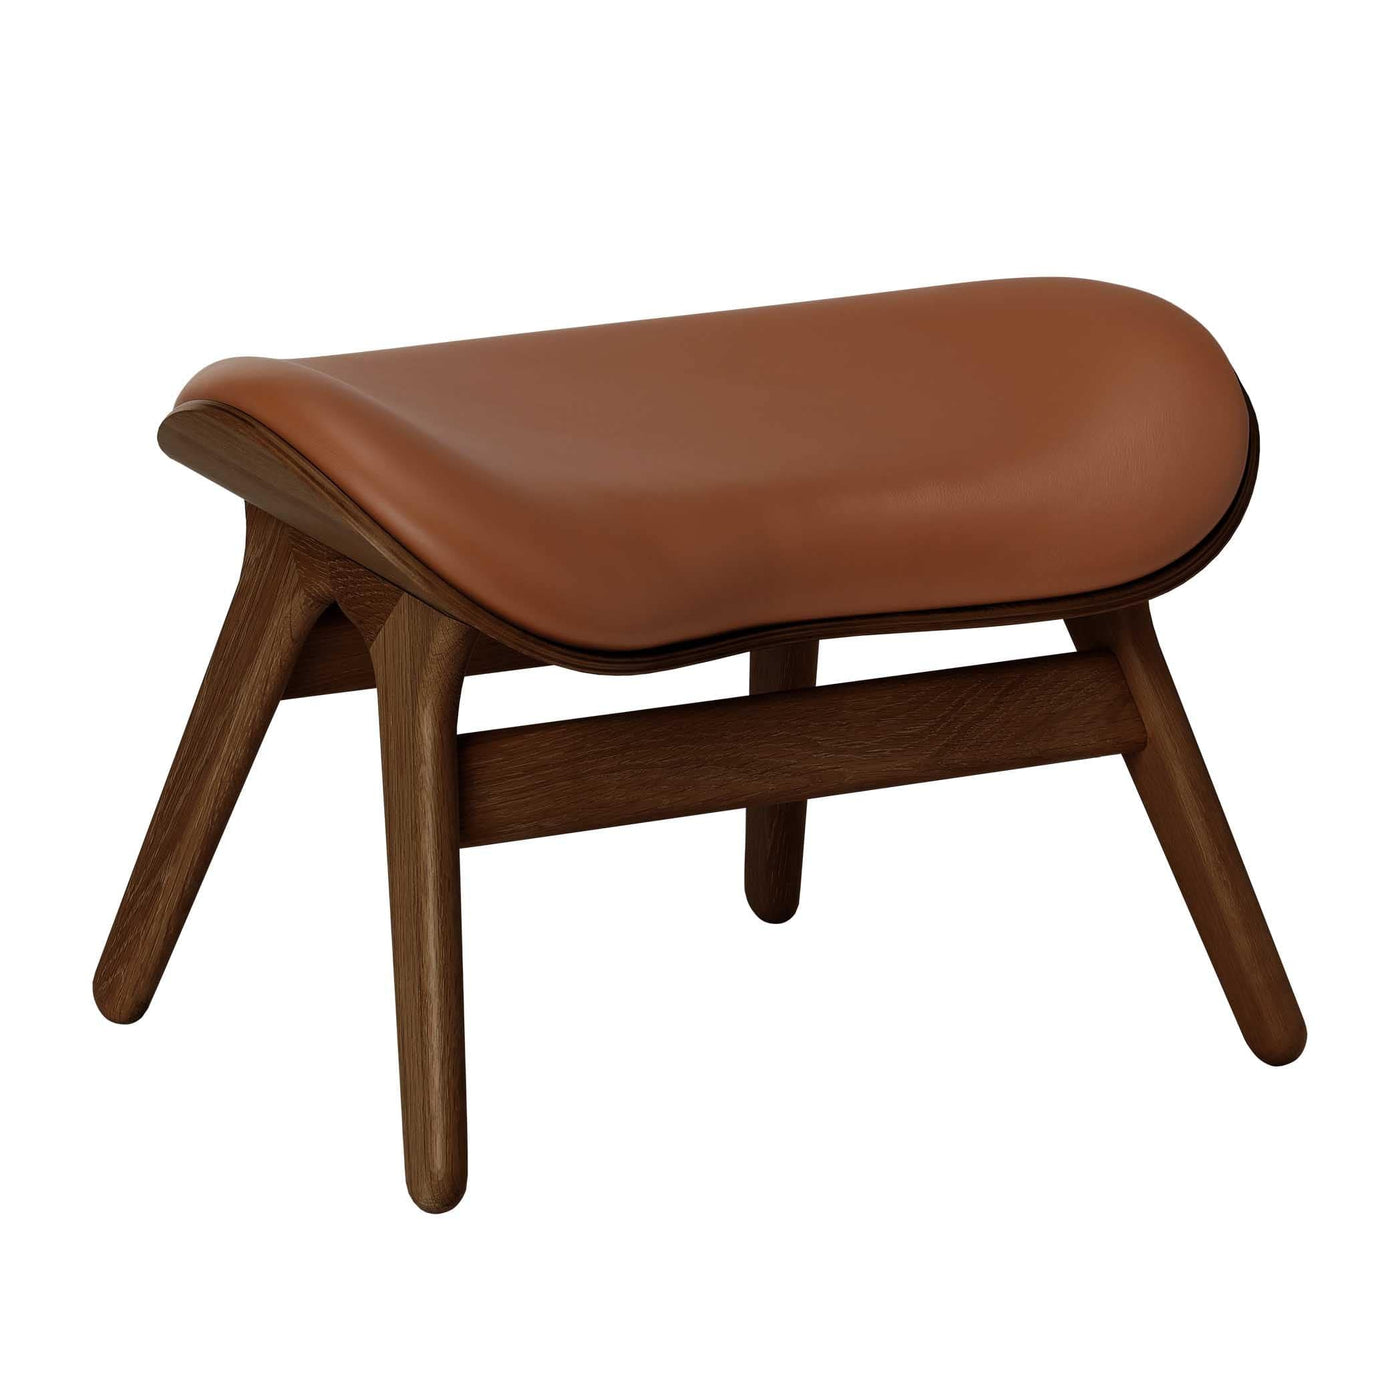 Umage A Conversation Piece, ottoman pour accompagner le fauteuil, en bois et polyester, cuir cognac, chêne foncé